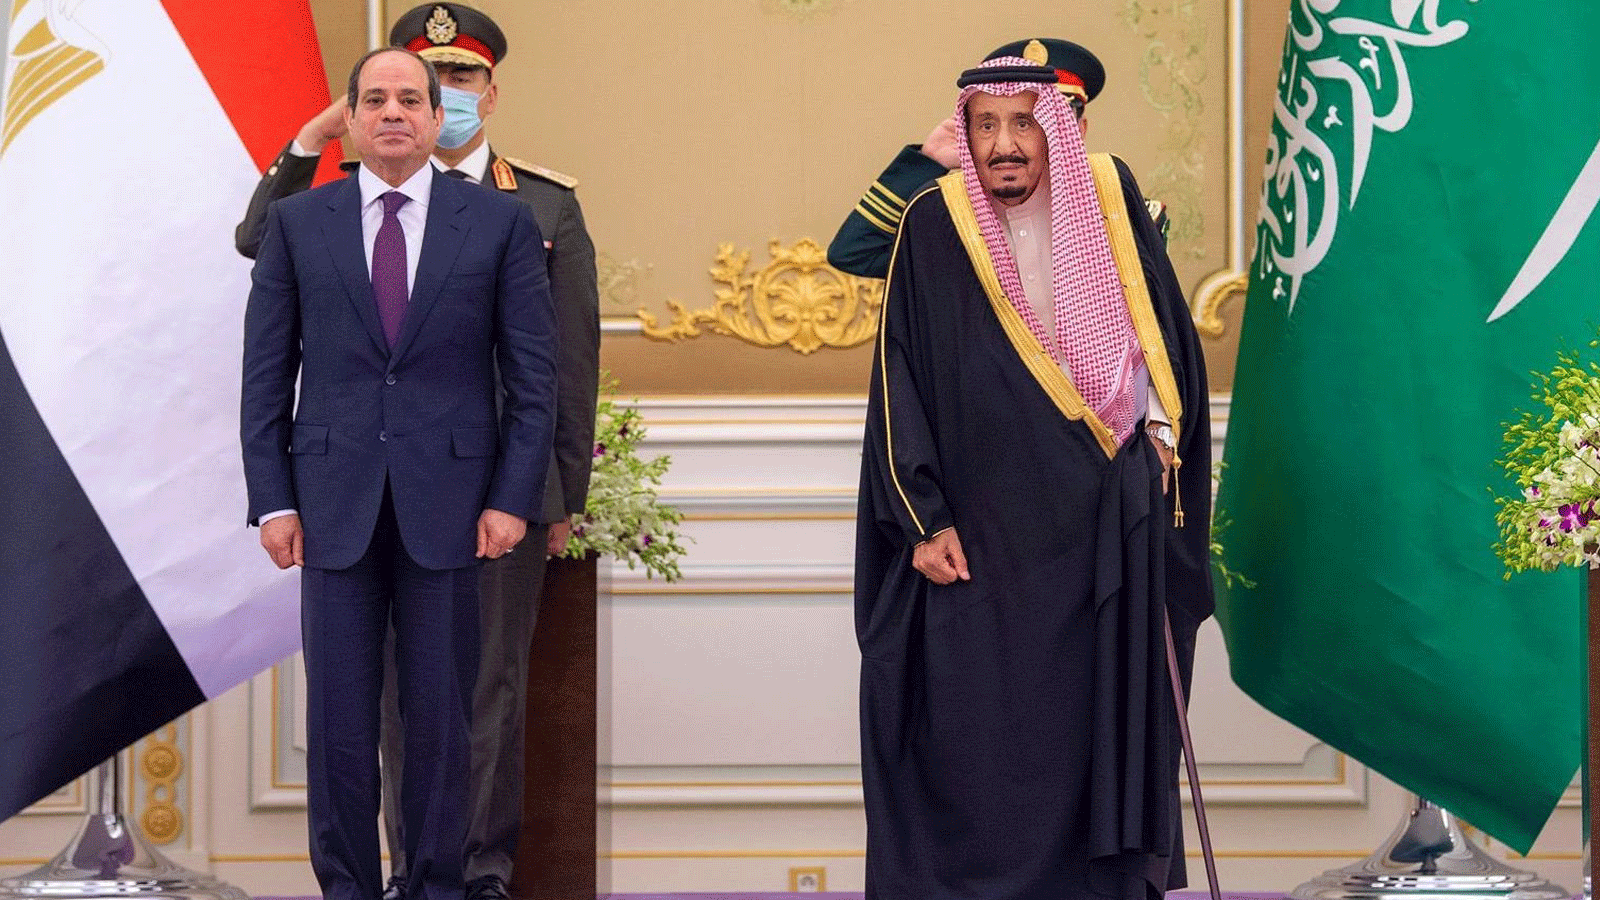 العاهل السعودي الملك سلمان بن عبد العزيز، مستقبلا الرئيس المصري عبدالفتاح السيسي في قصر اليمامة\ الرياض 